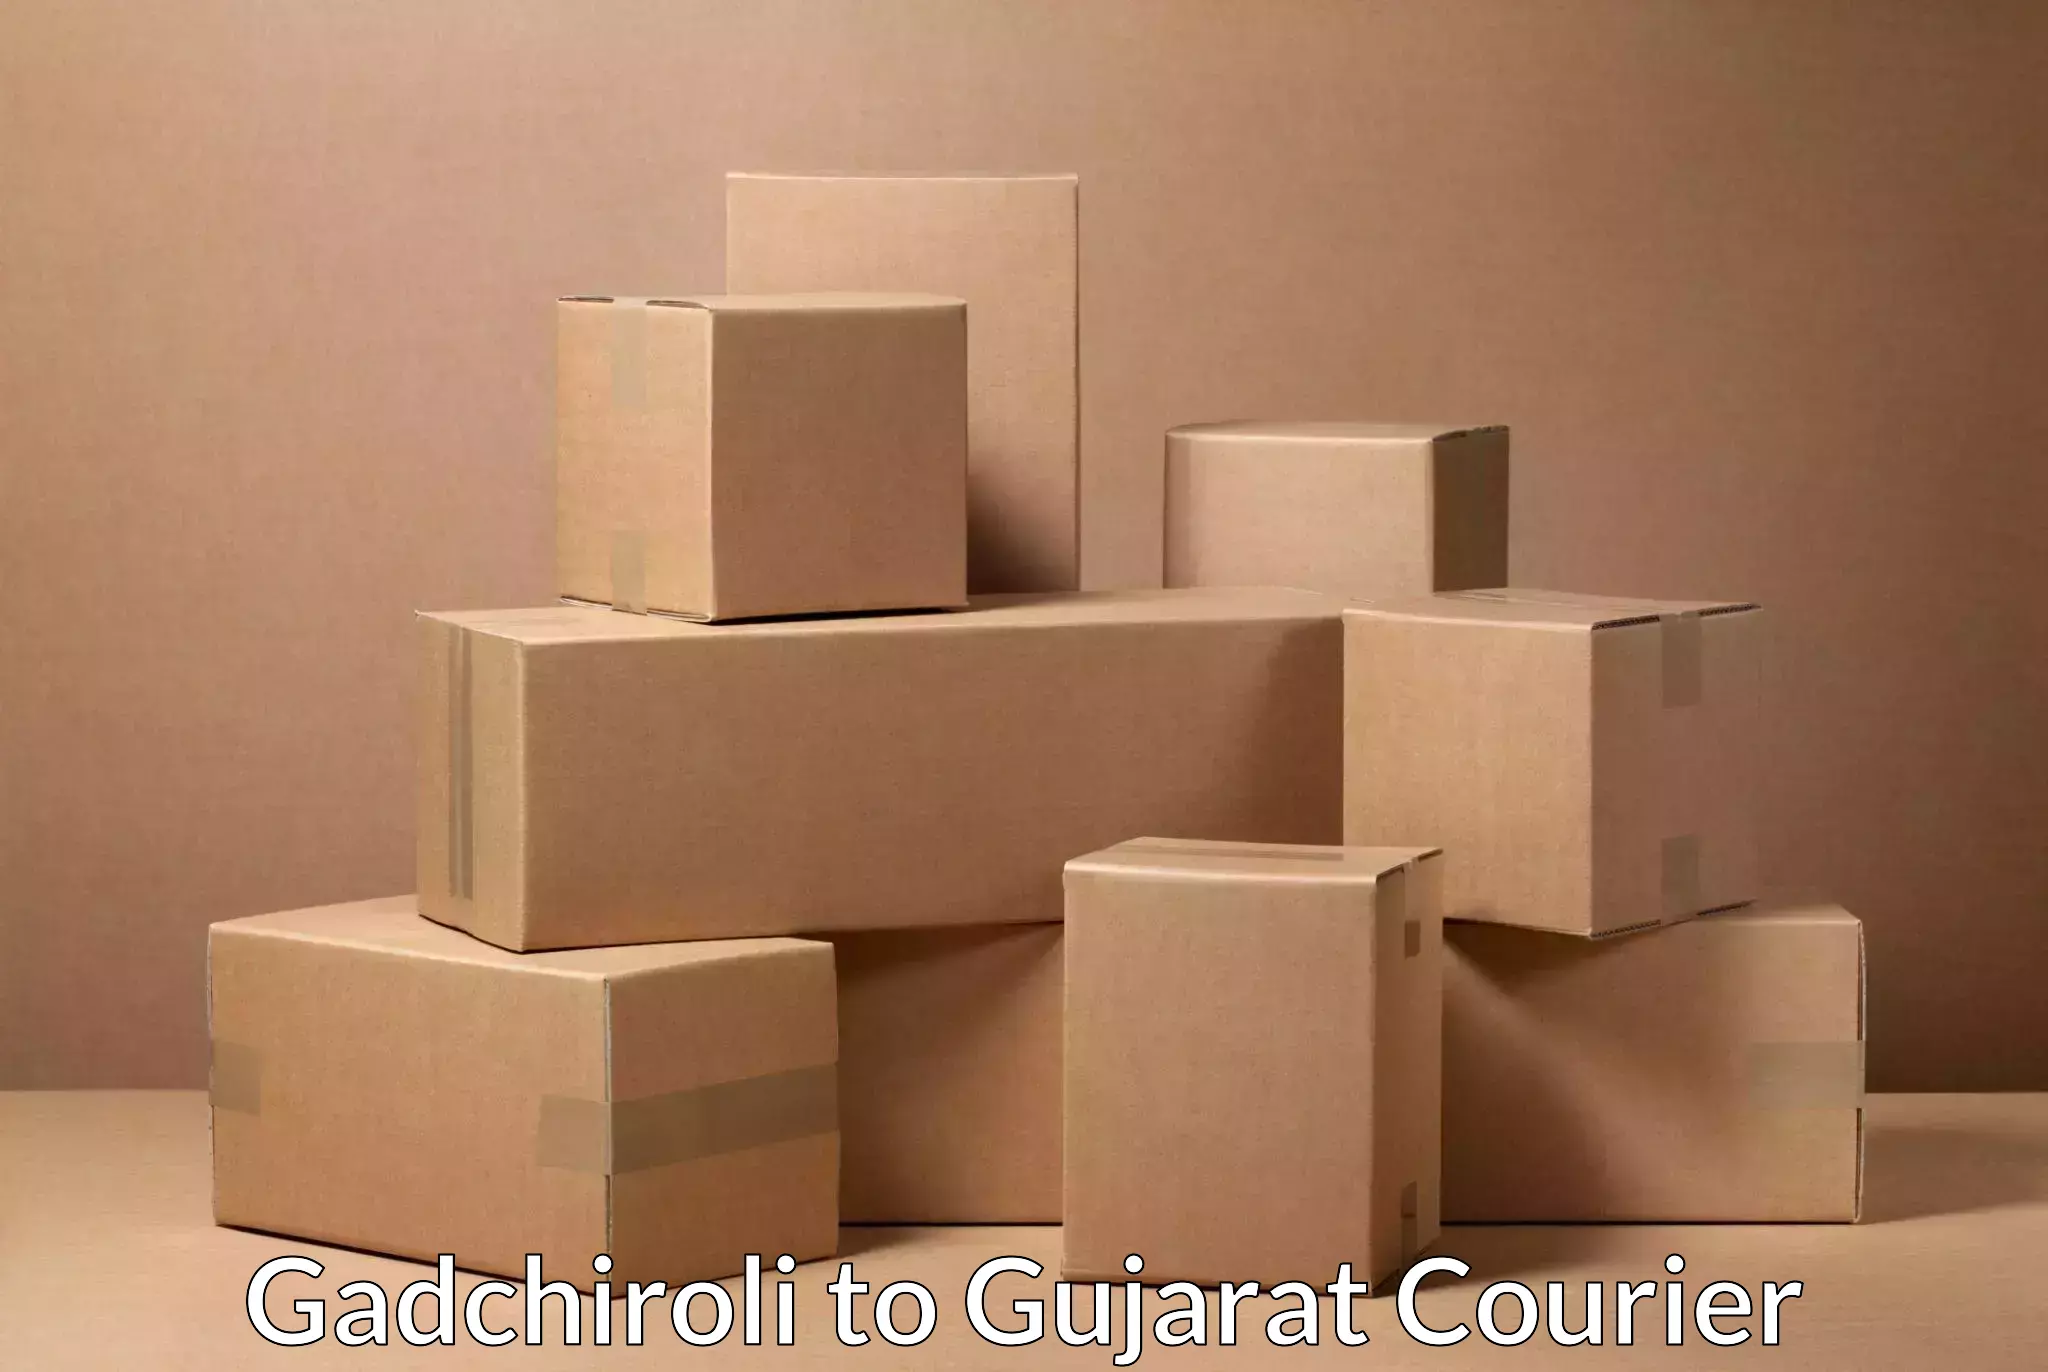 Business shipping needs Gadchiroli to Mundra